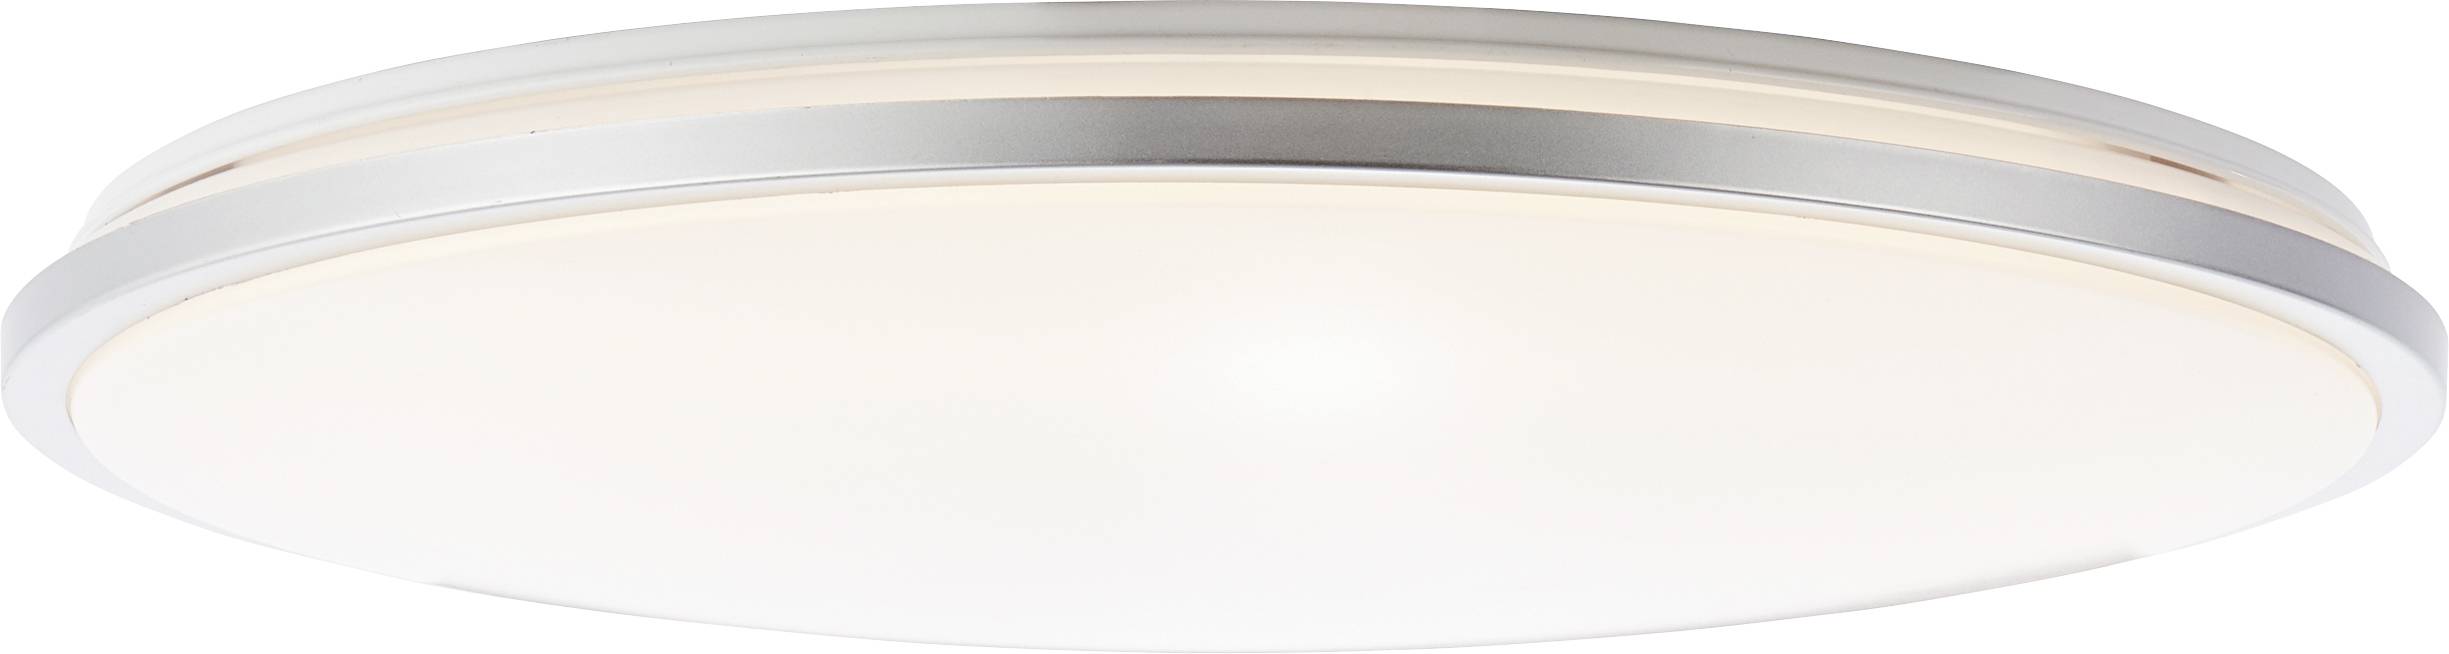 BRILLIANT Jamil G97010/75 LED-Deckenleuchte 60 W Weiß-Silber